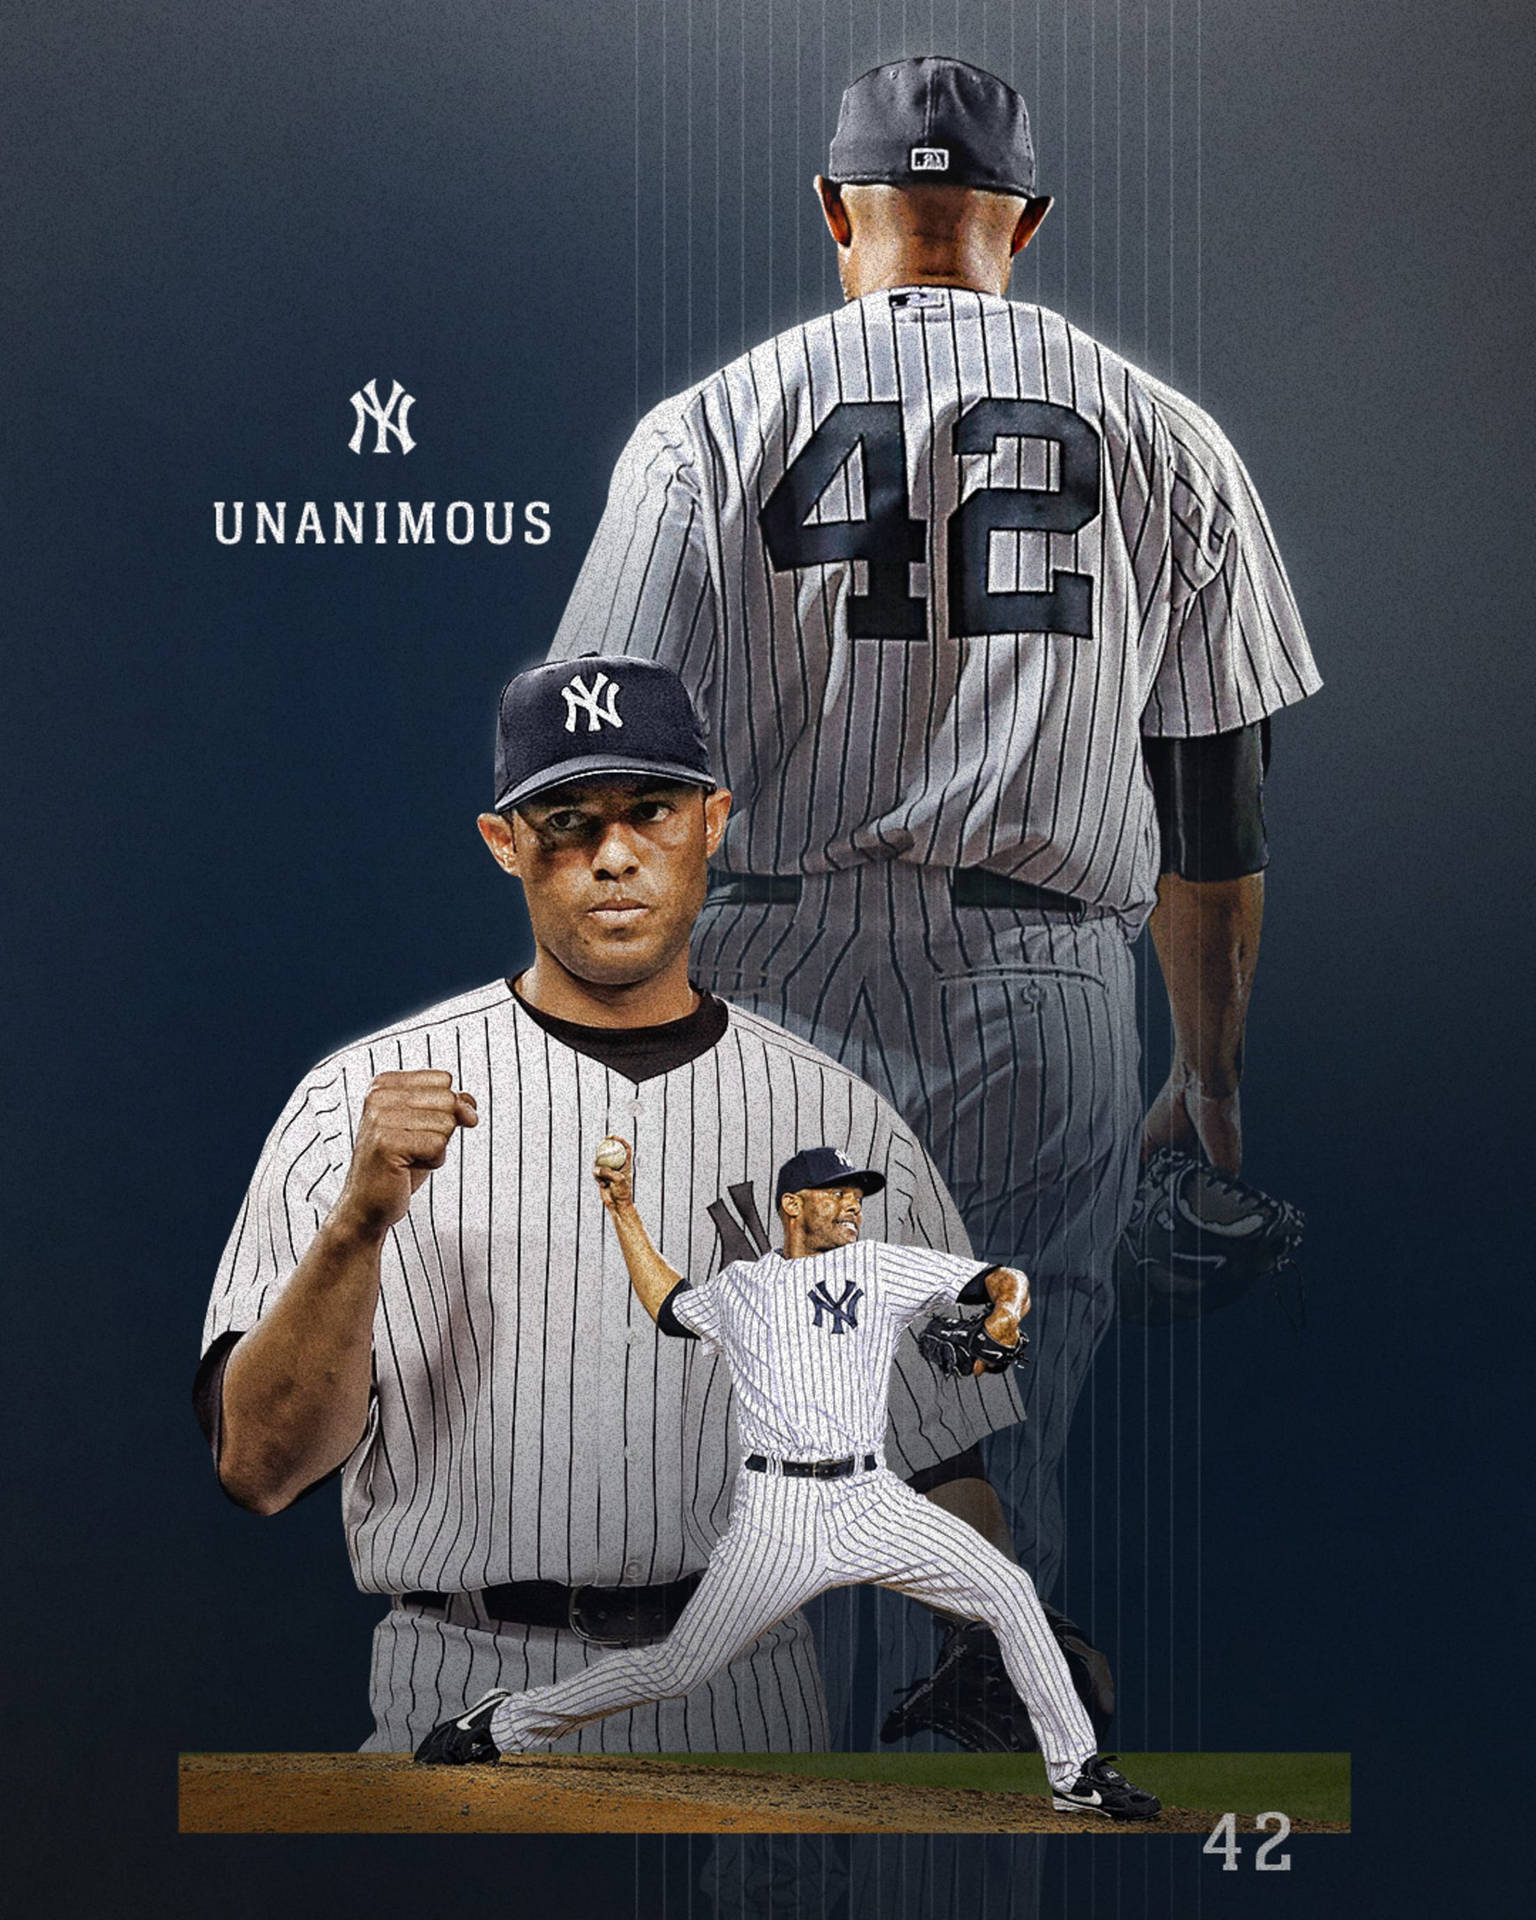 Yankees Mariano Rivera Unanimous Wallpaper